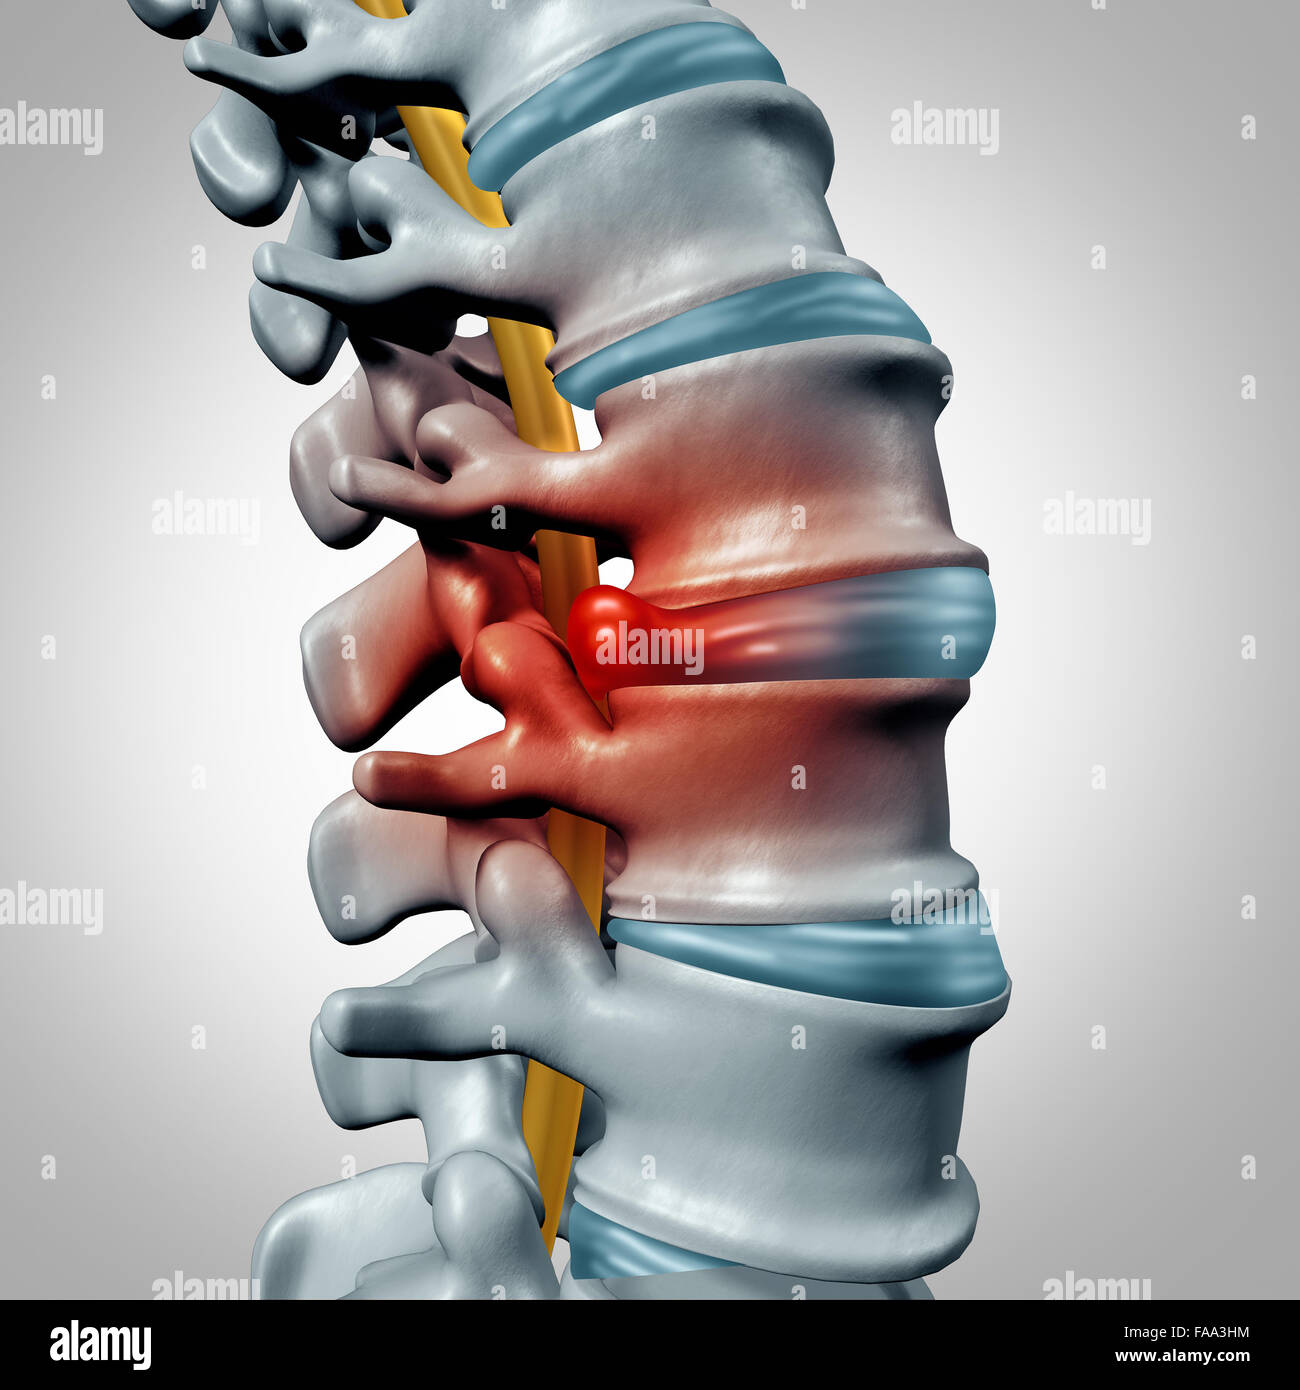 Hernia discal concepto y diagnóstico del dolor de columna vertebral humana como un símbolo del sistema como problema de salud médica y anatomía esquelética símbolo con la estructura ósea y los discos intervertebrales closeup. Foto de stock